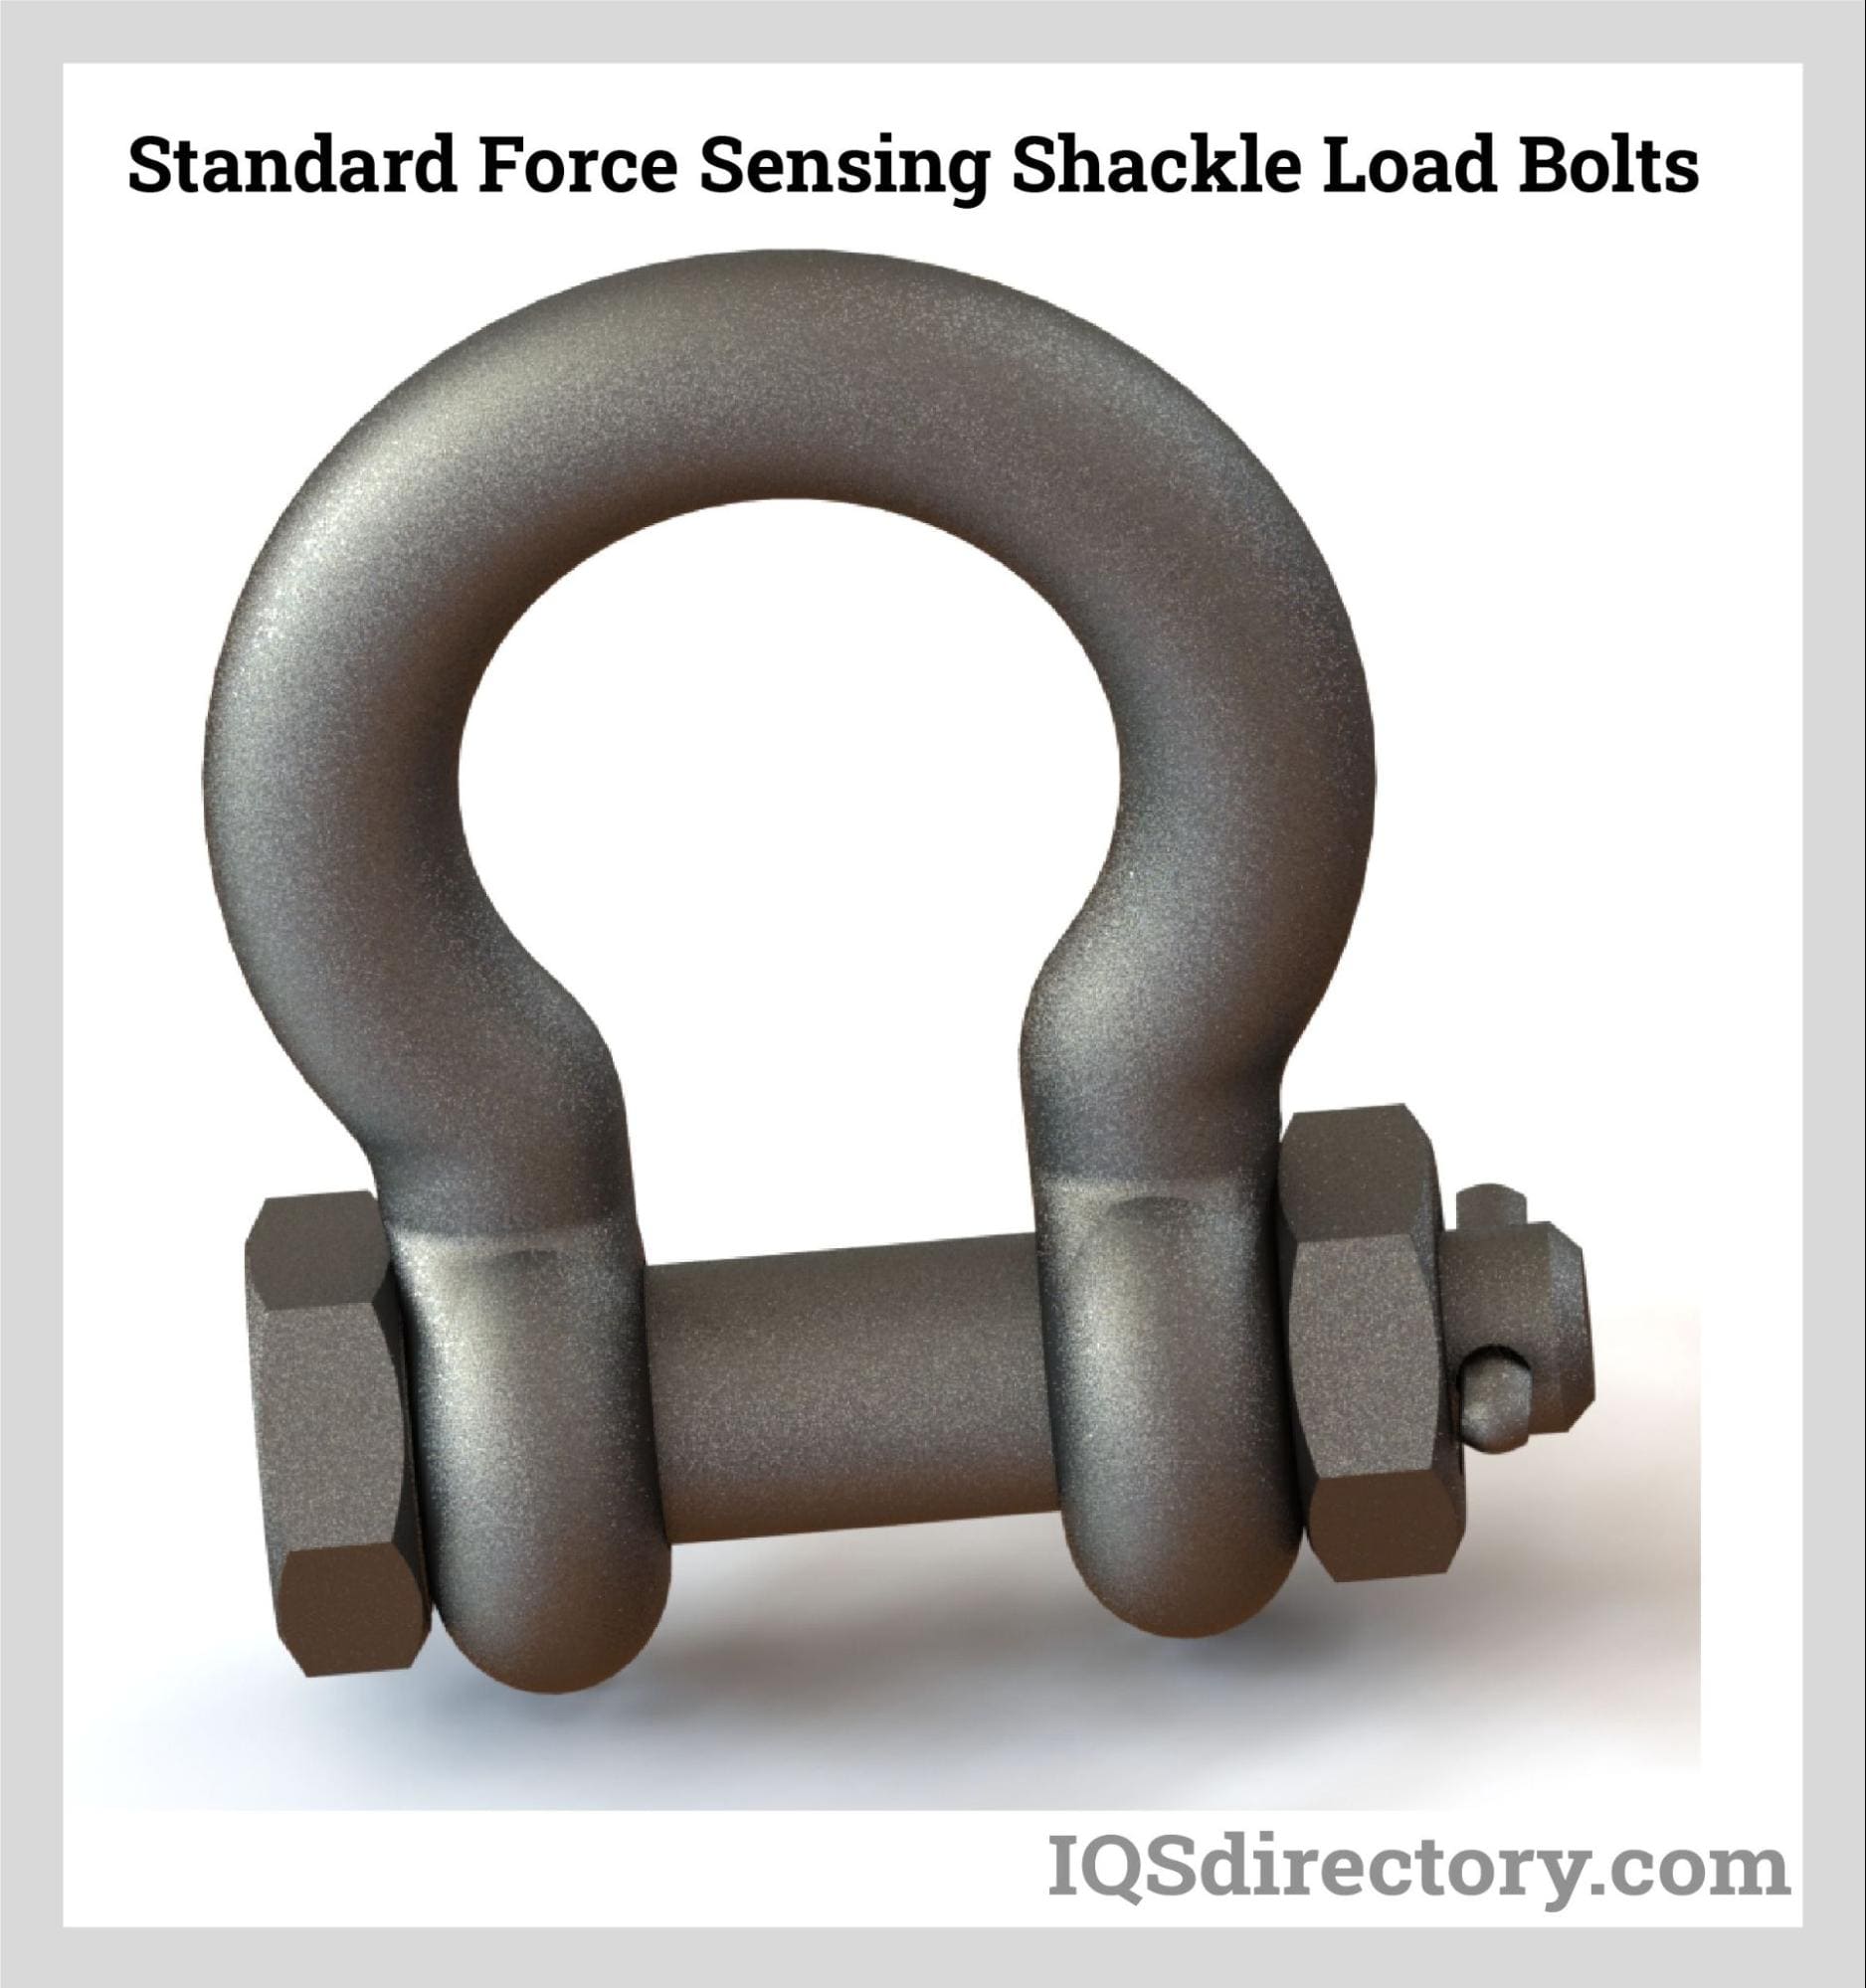 Standard Force Sensing Shackle Load Bolts